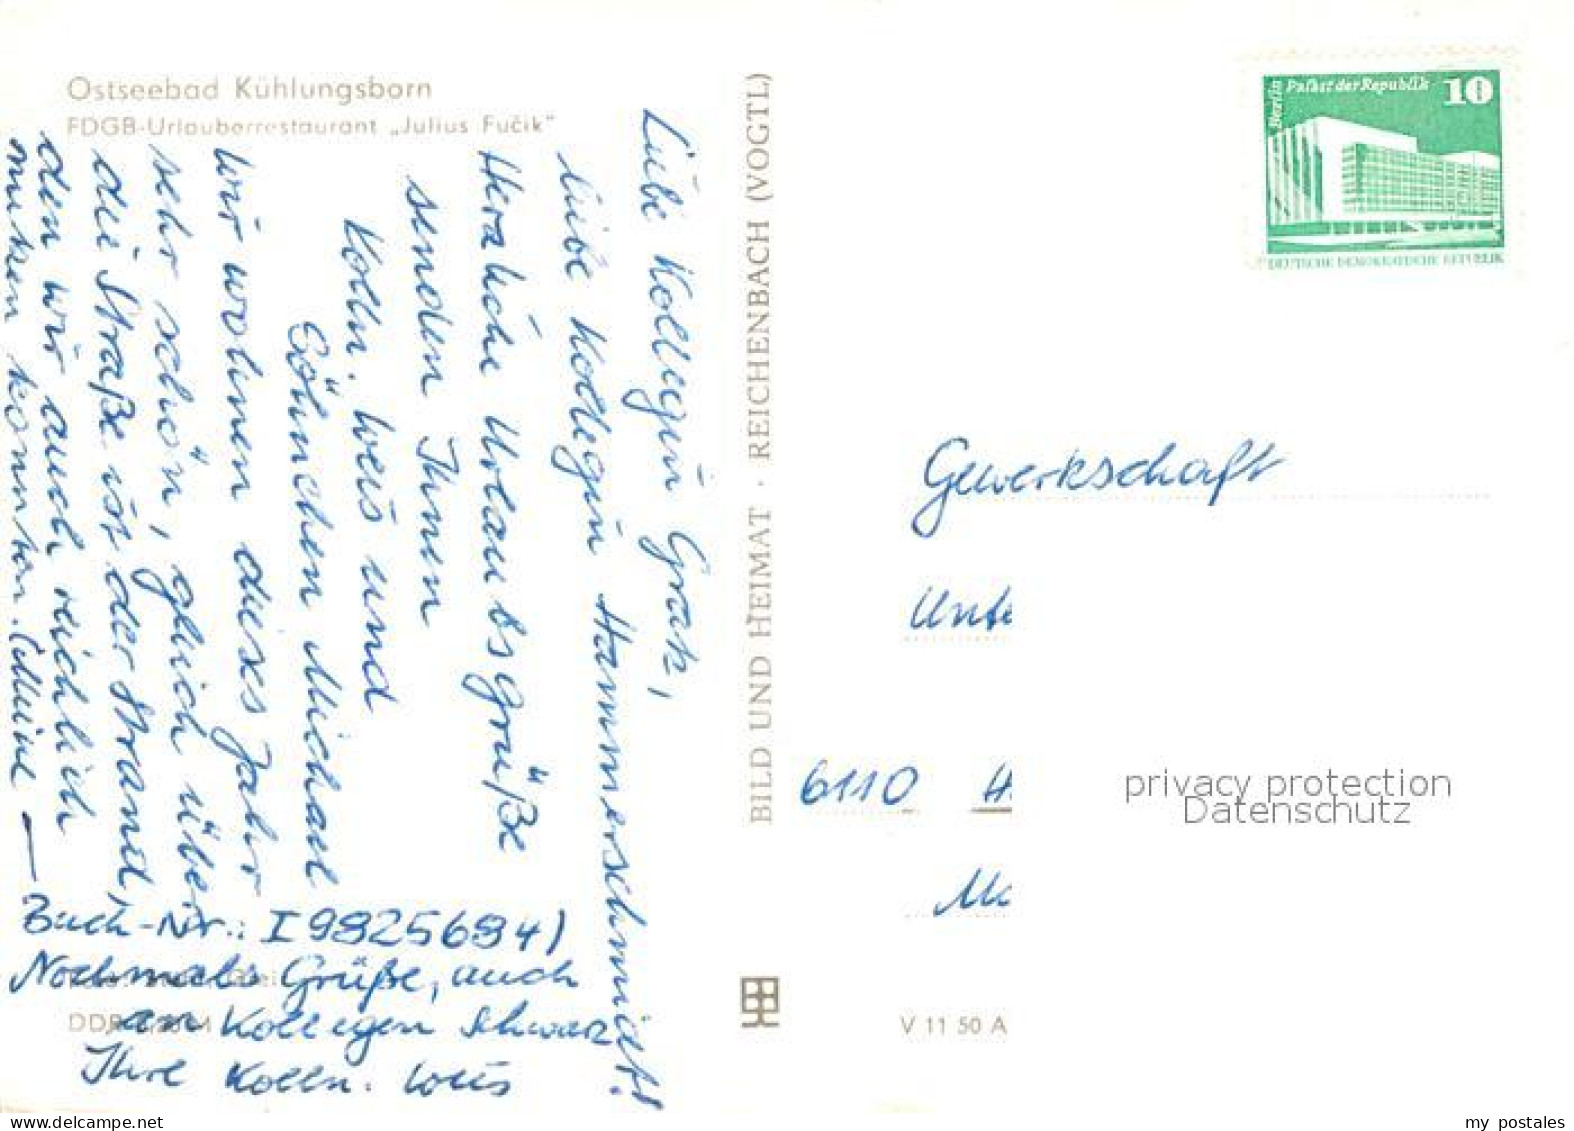 73105722 Kuehlungsborn Ostseebad FDGB Urlauberrestaurant Julius Fucik Kuehlungsb - Kuehlungsborn